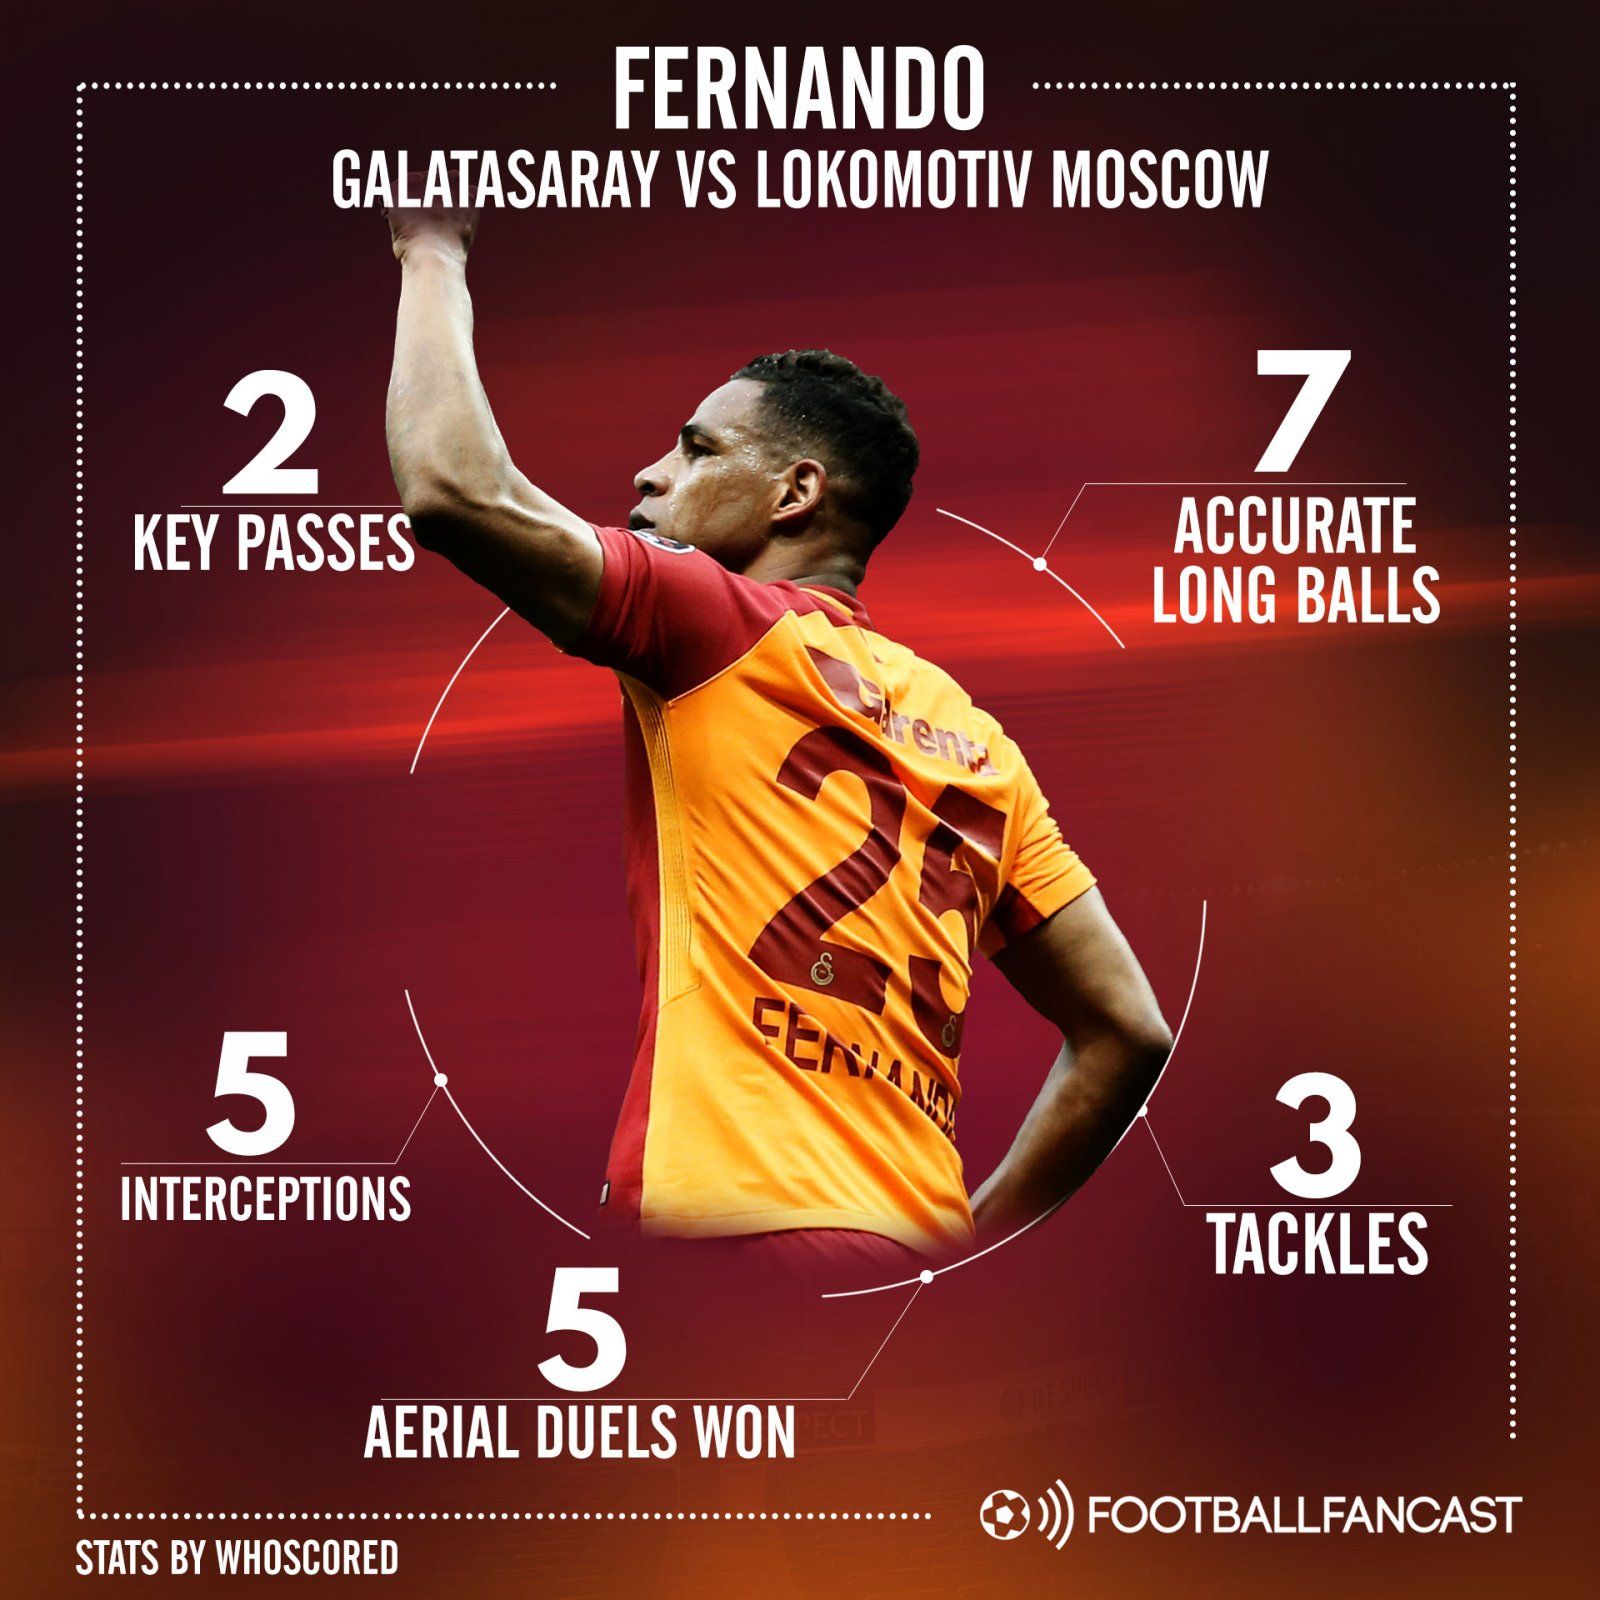 Galatasaray midfielder Fernando's stats in 3-0 win against Lokomotiv Moscow